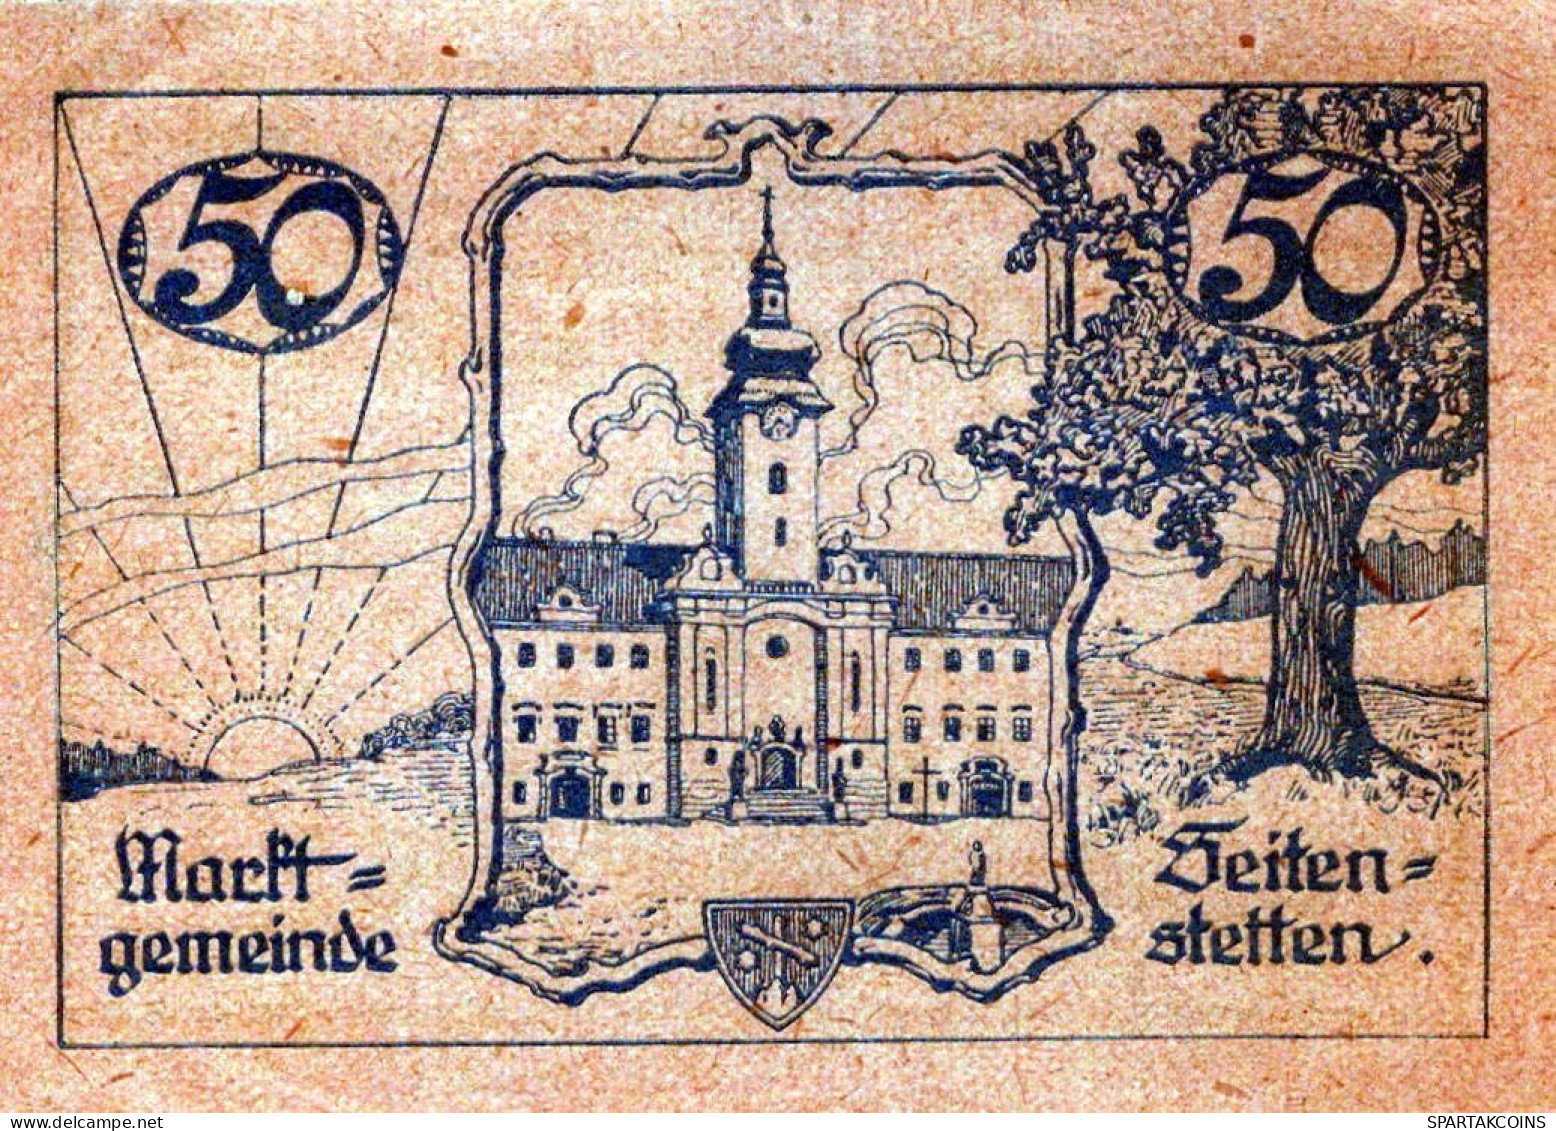 50 HELLER 1920 Stadt SEITENSTETTEN Niedrigeren Österreich UNC Österreich Notgeld #PH399 - Lokale Ausgaben